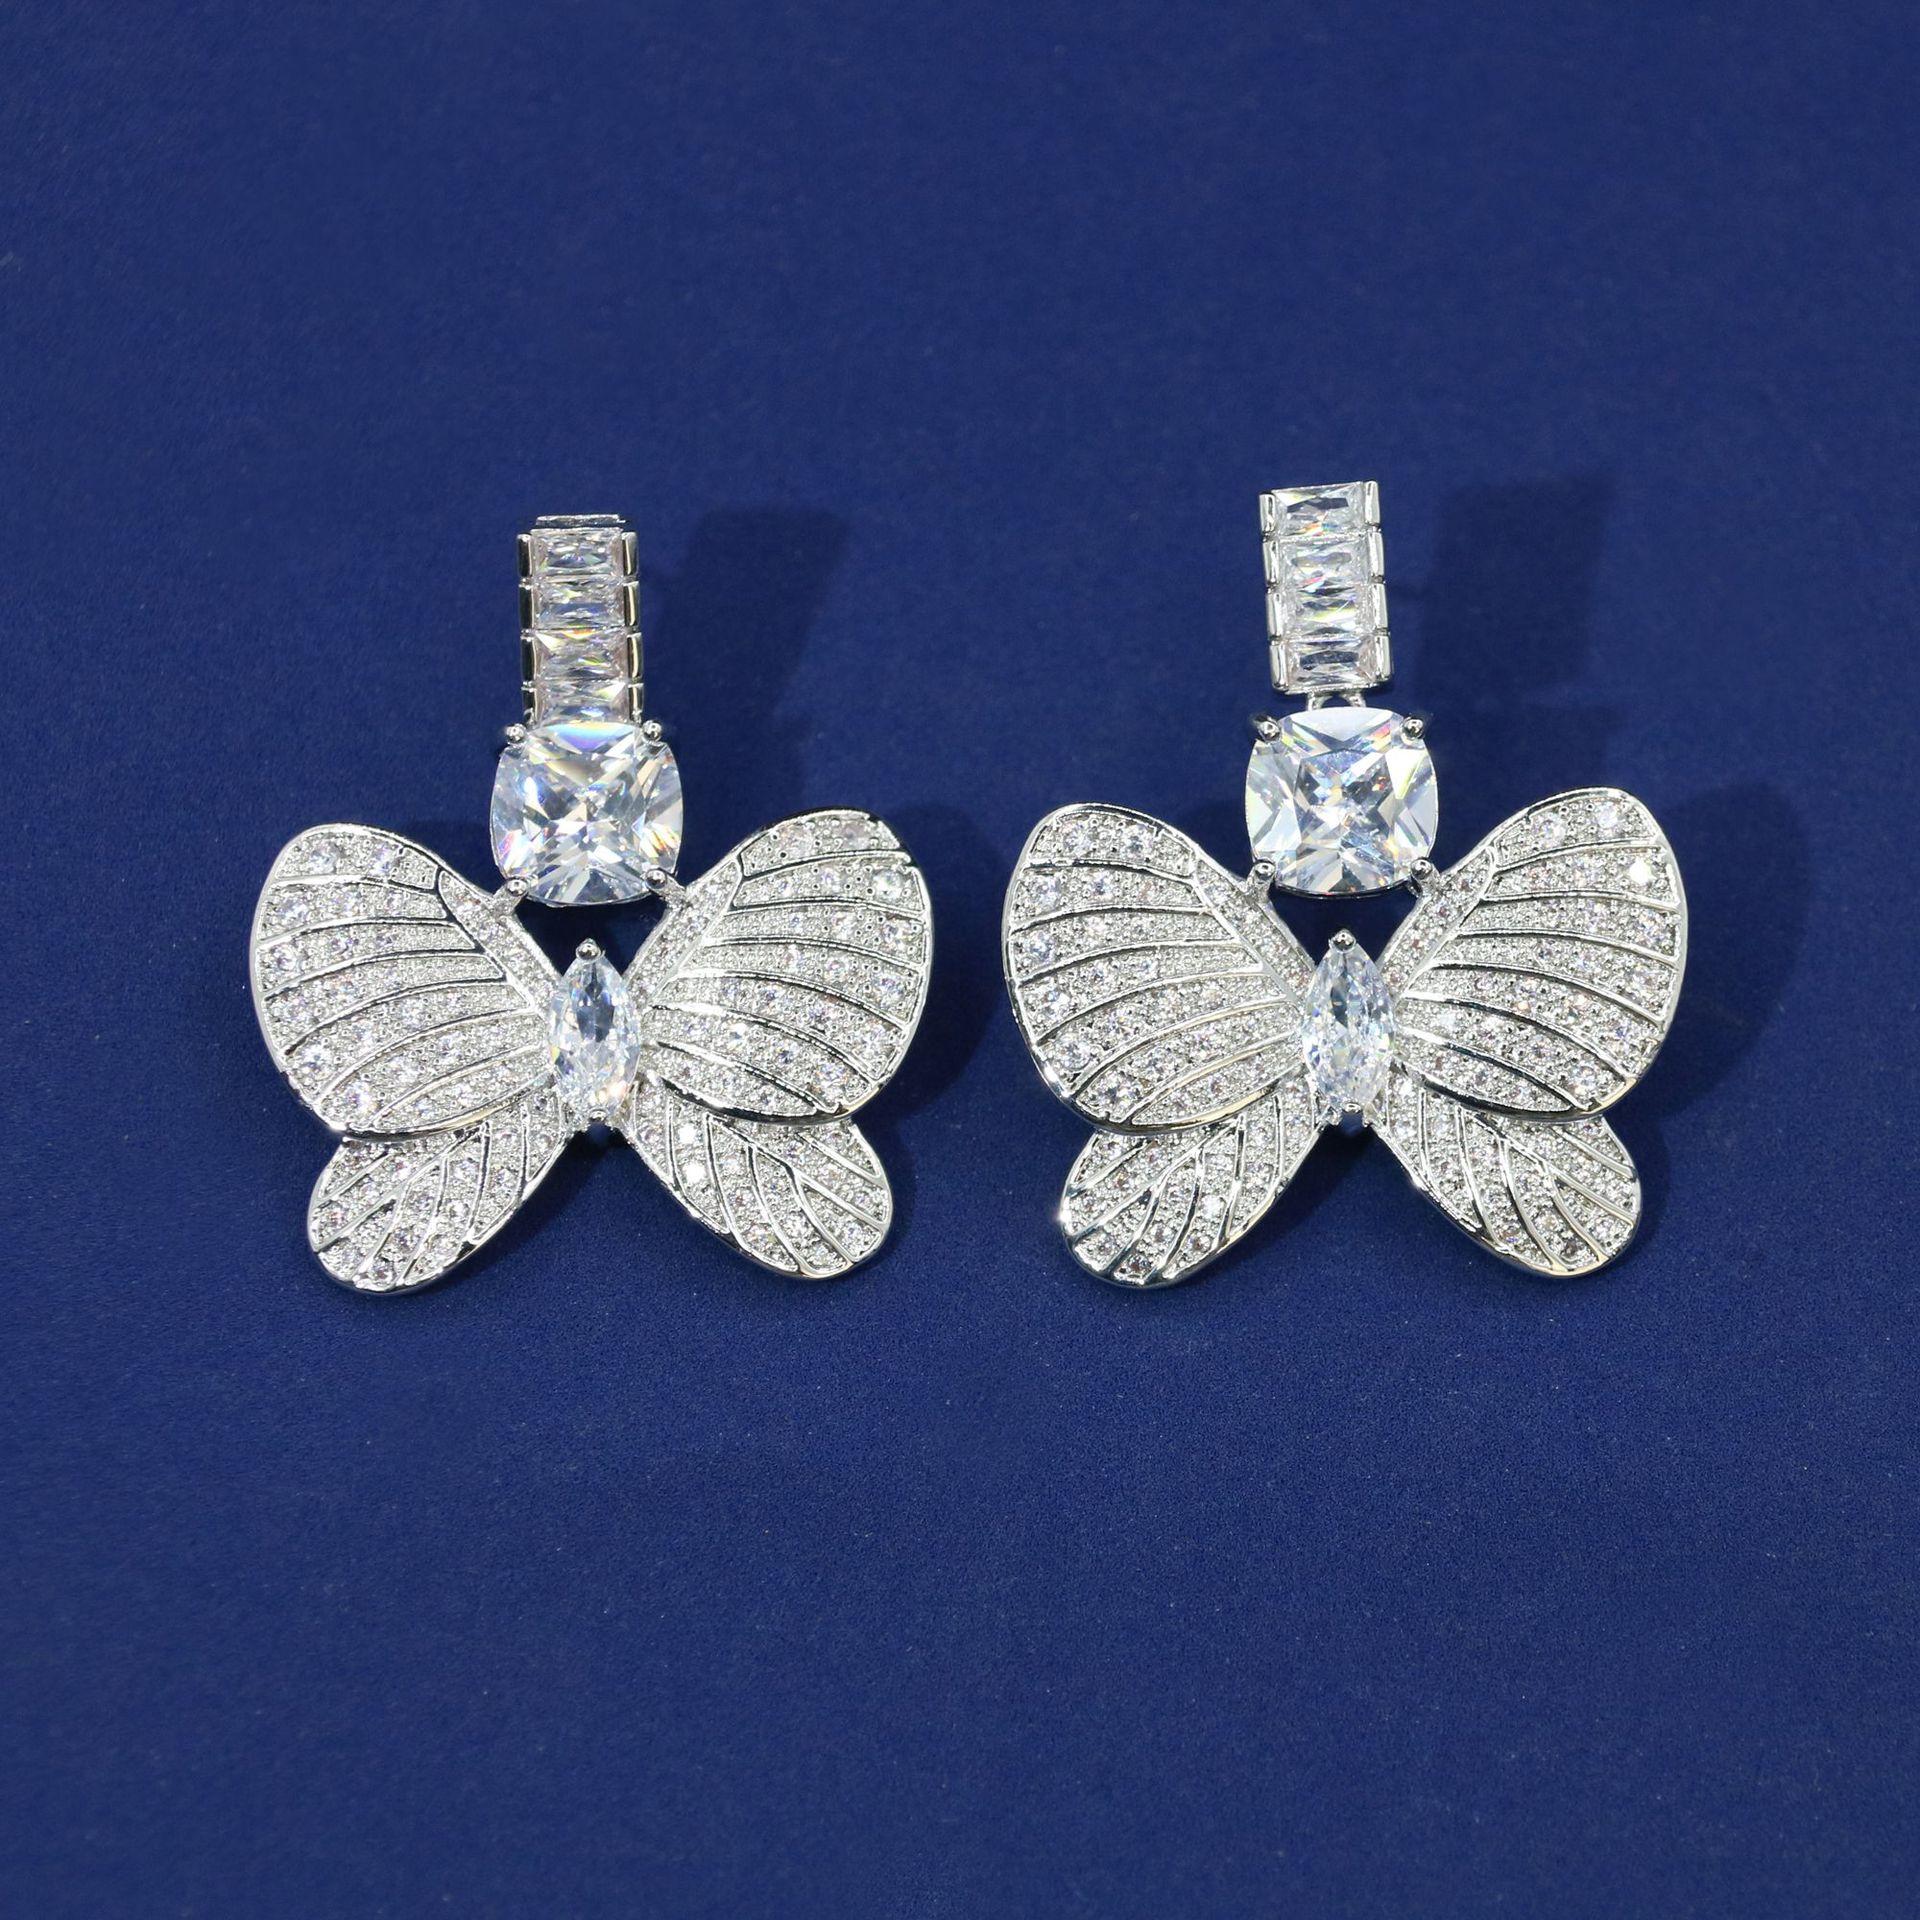 White zirconium earrings on white background